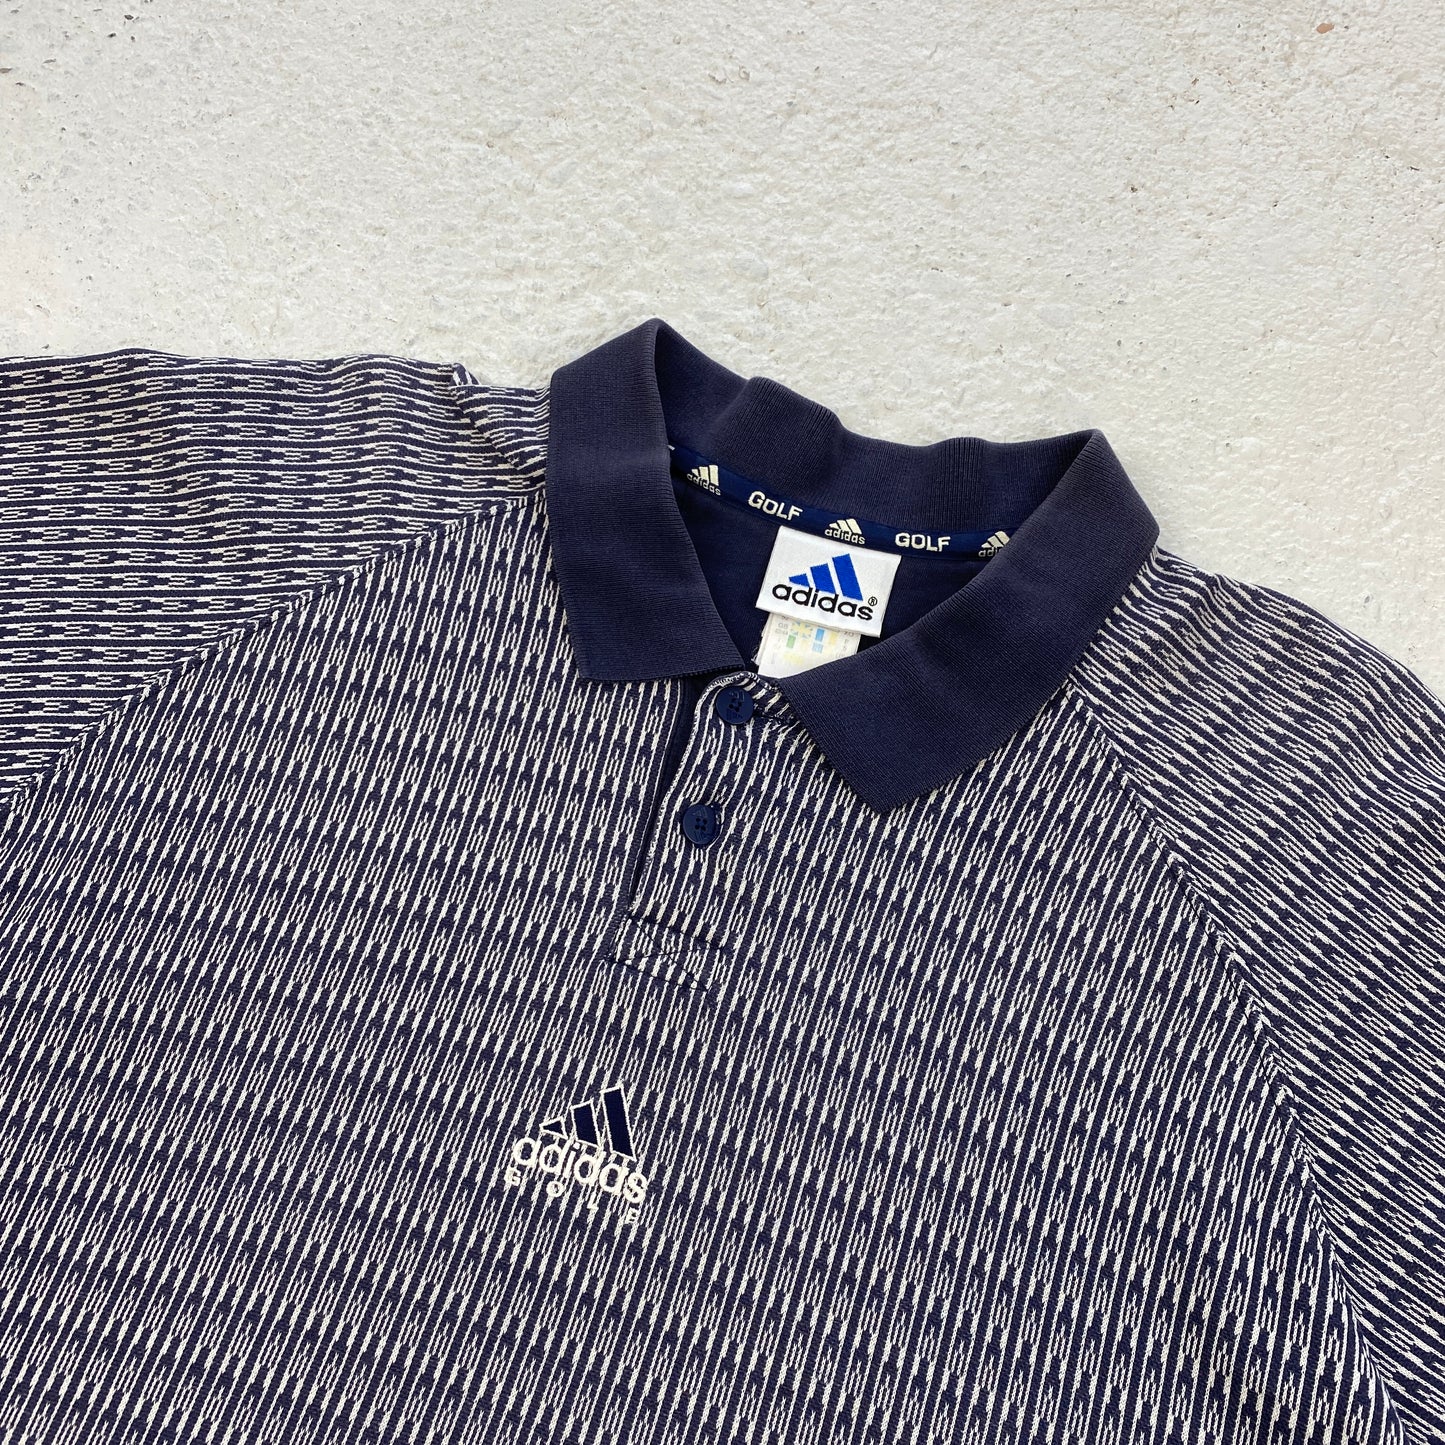 Adidas Golf RARE heavyweight polo shirt (L-XL)